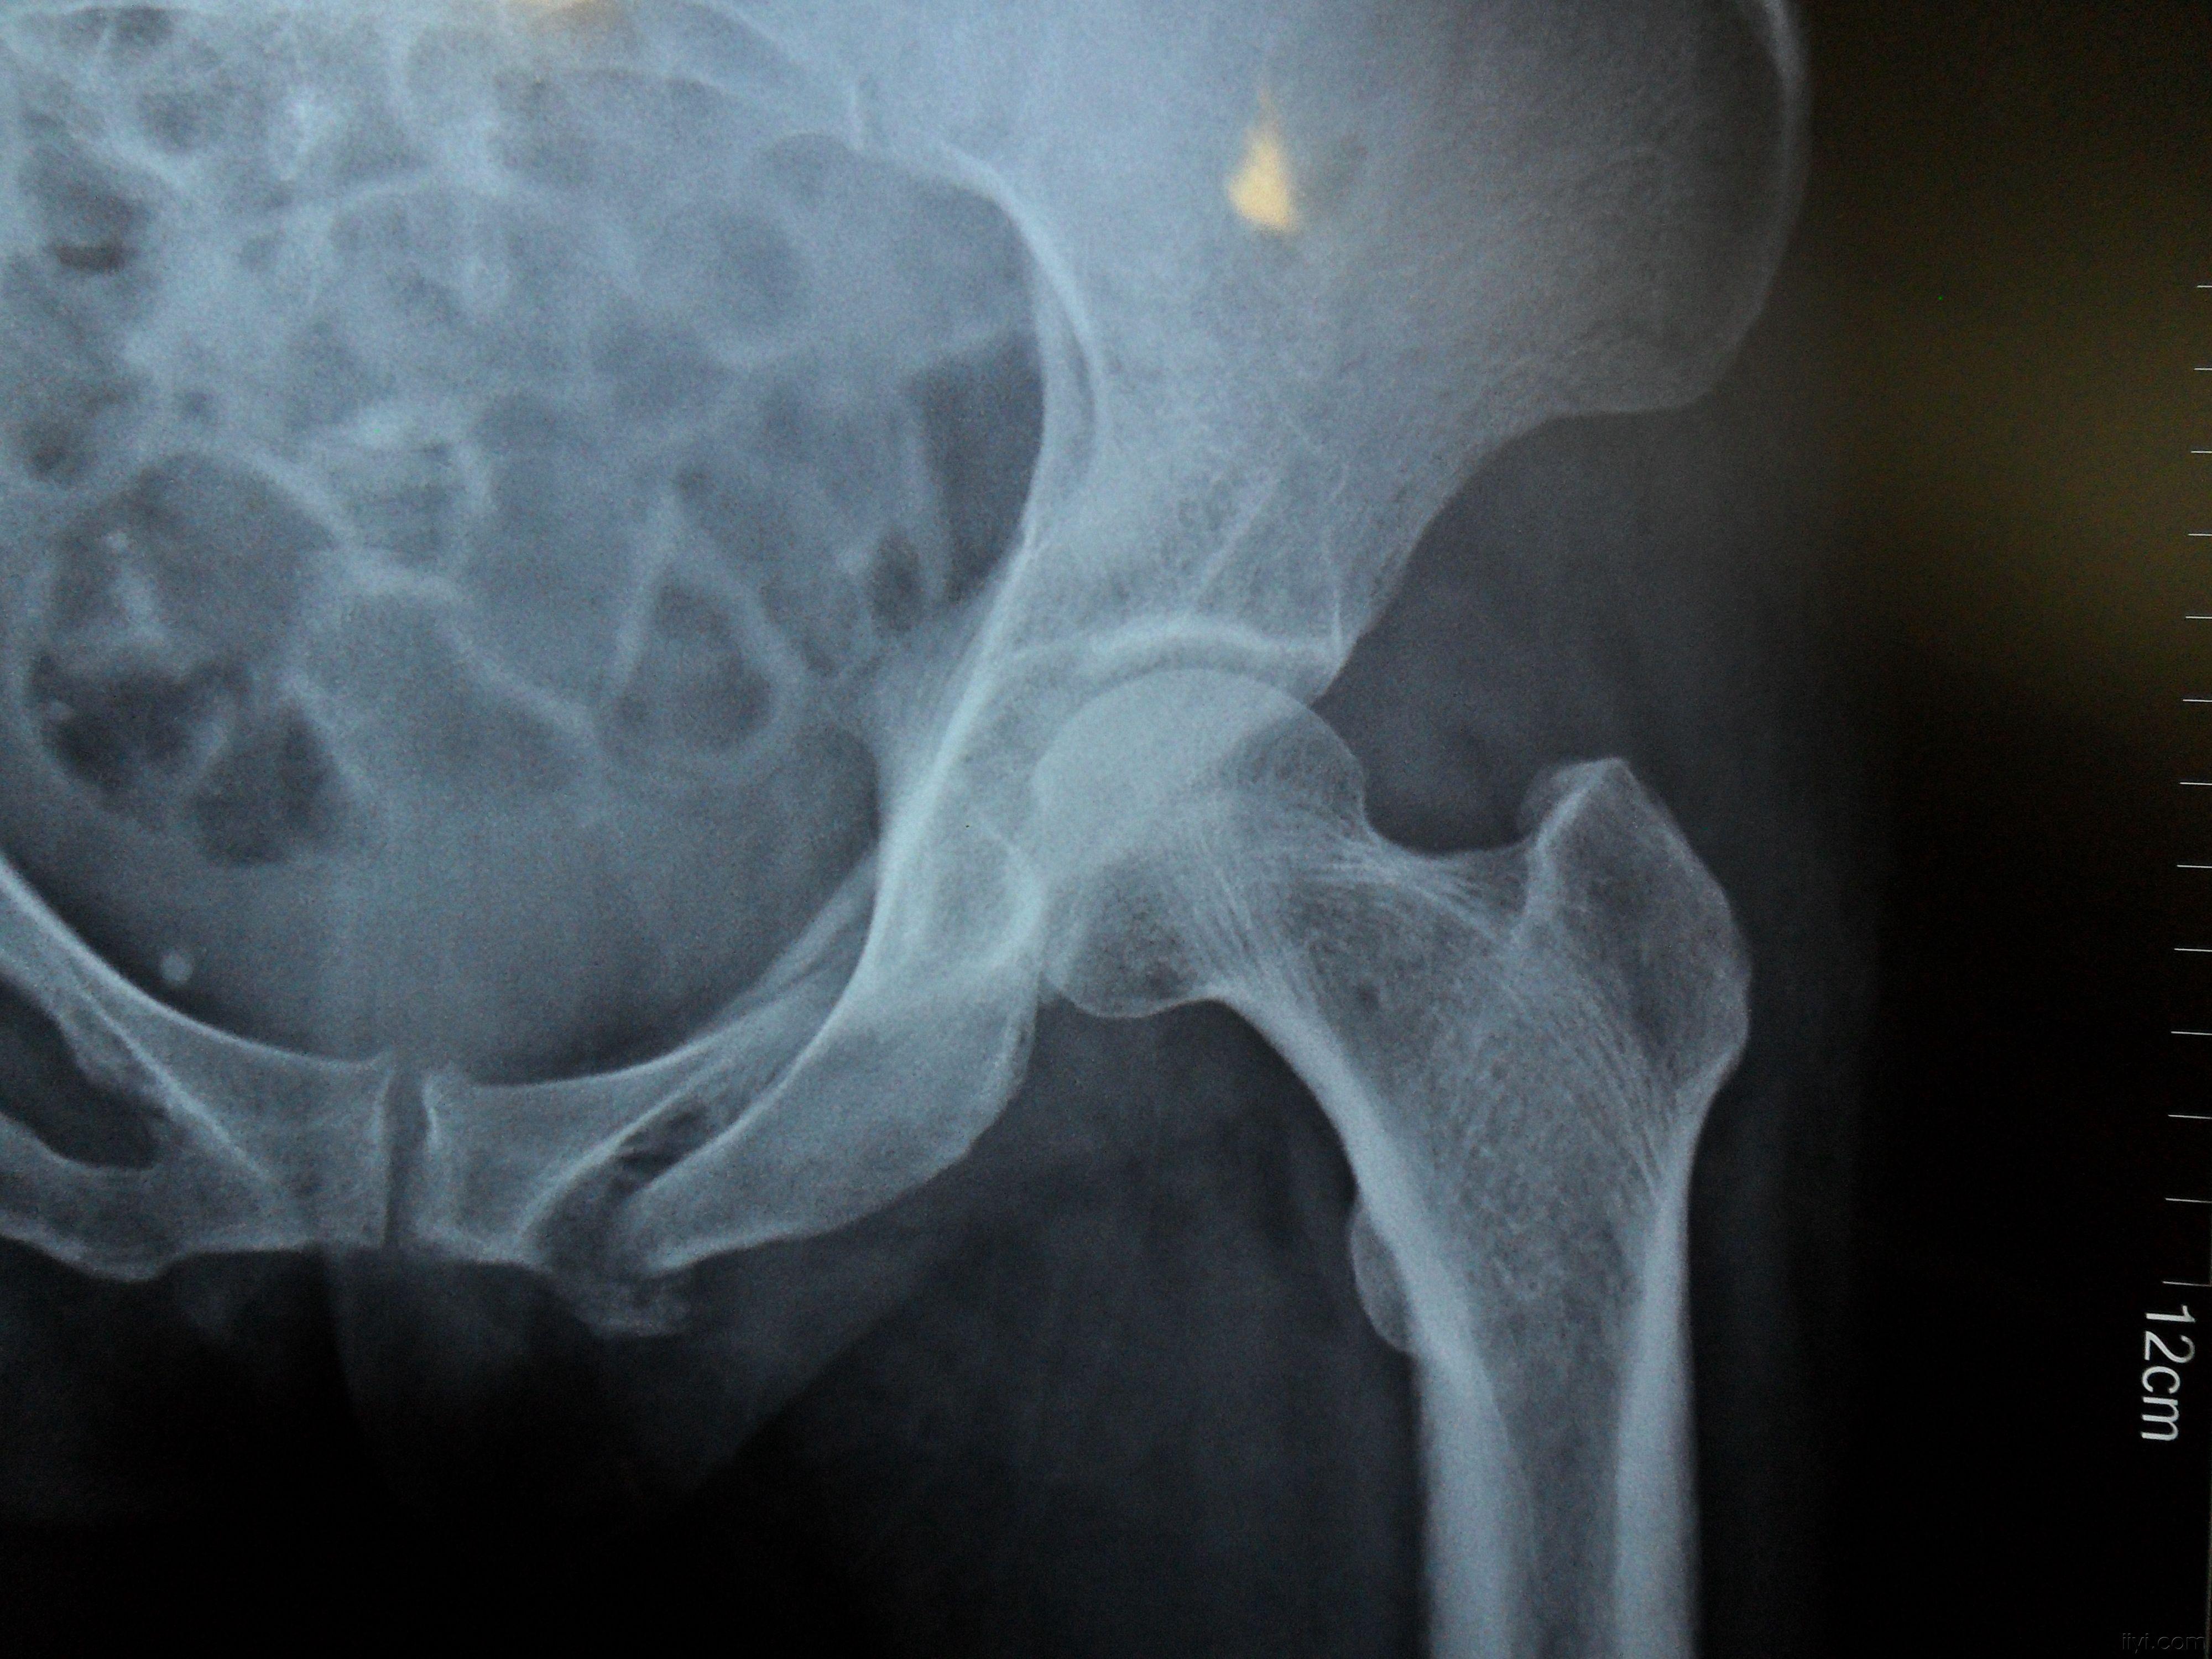 骨盆髋臼粉碎性骨折非手术治疗